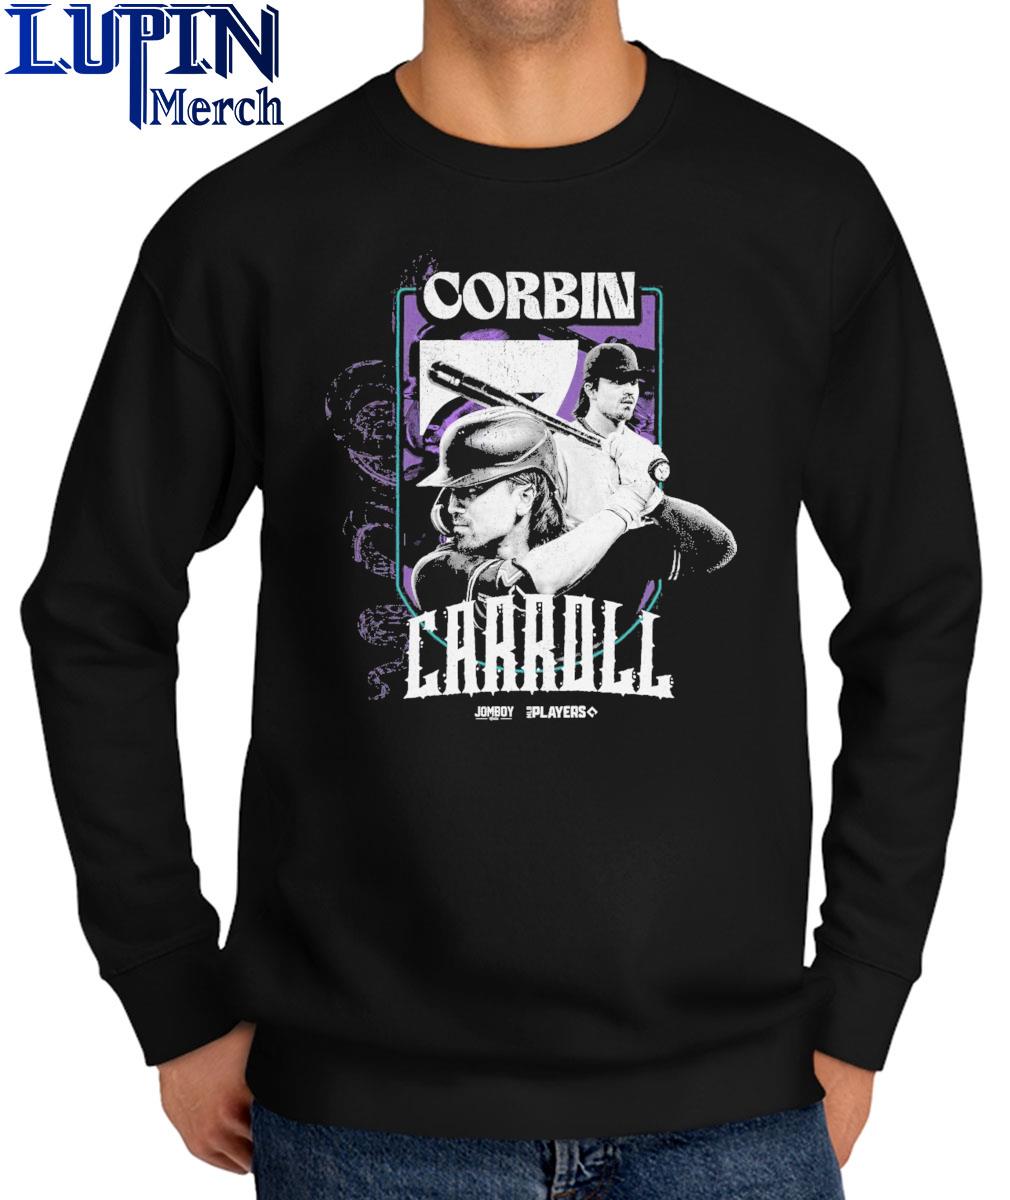 New Corbin Carroll T-shirt! - AZ Snake Pit